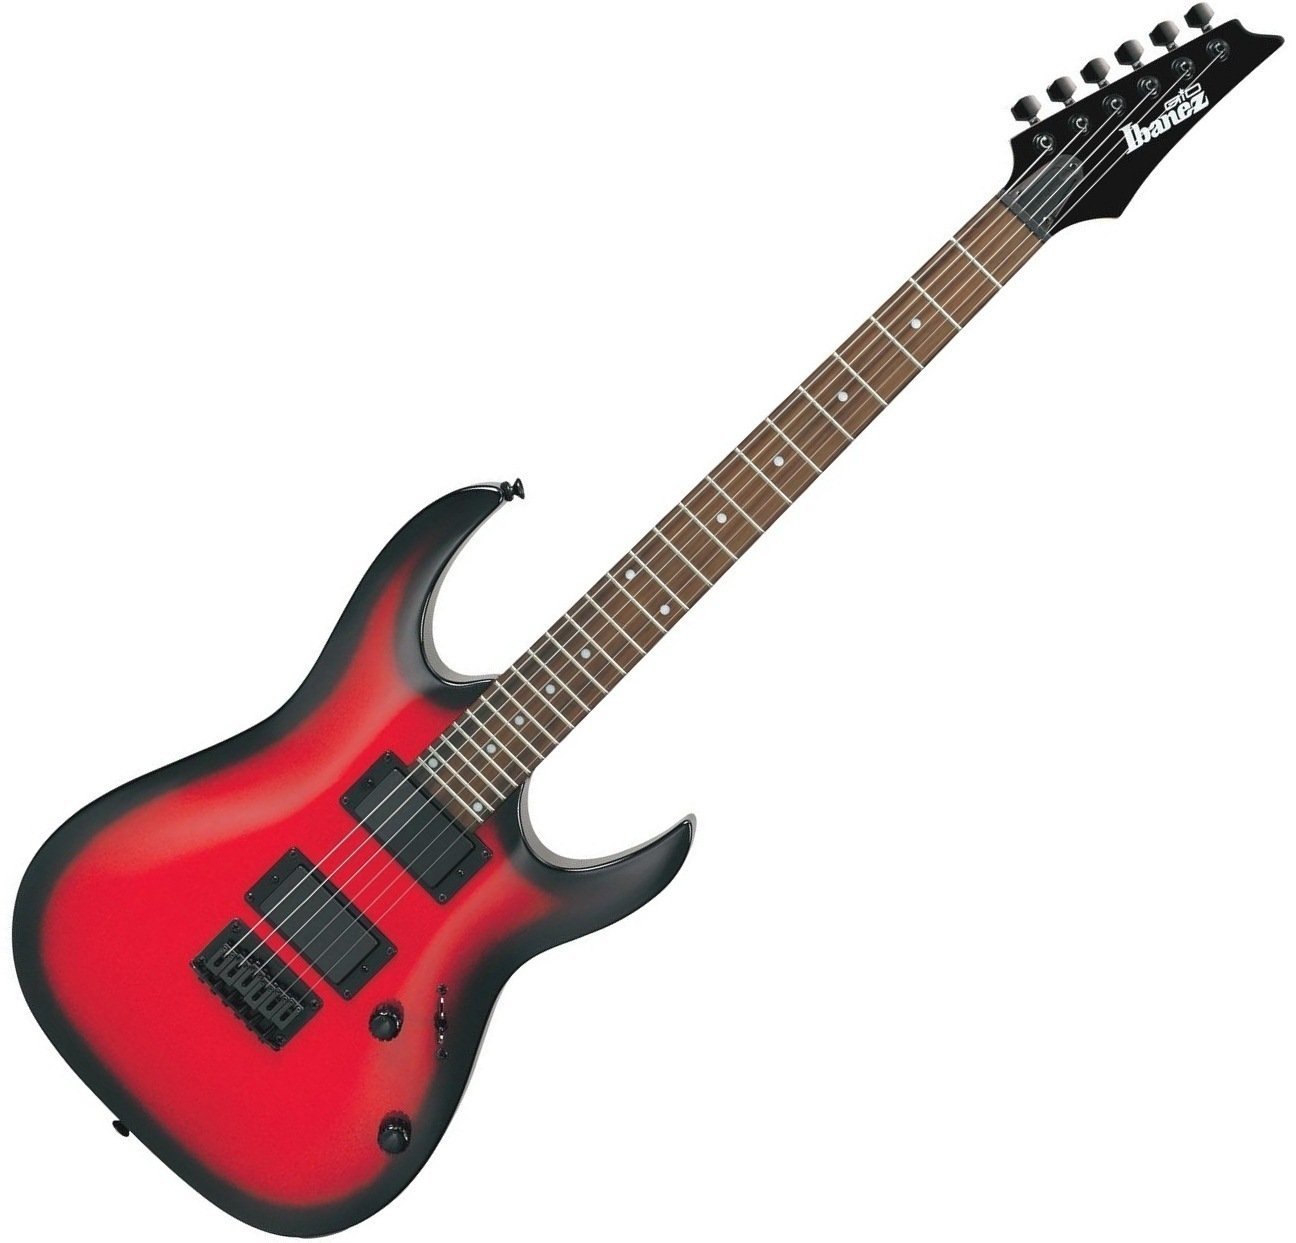 Electric guitar Ibanez GRGA 32 Metallic Red Sunburst